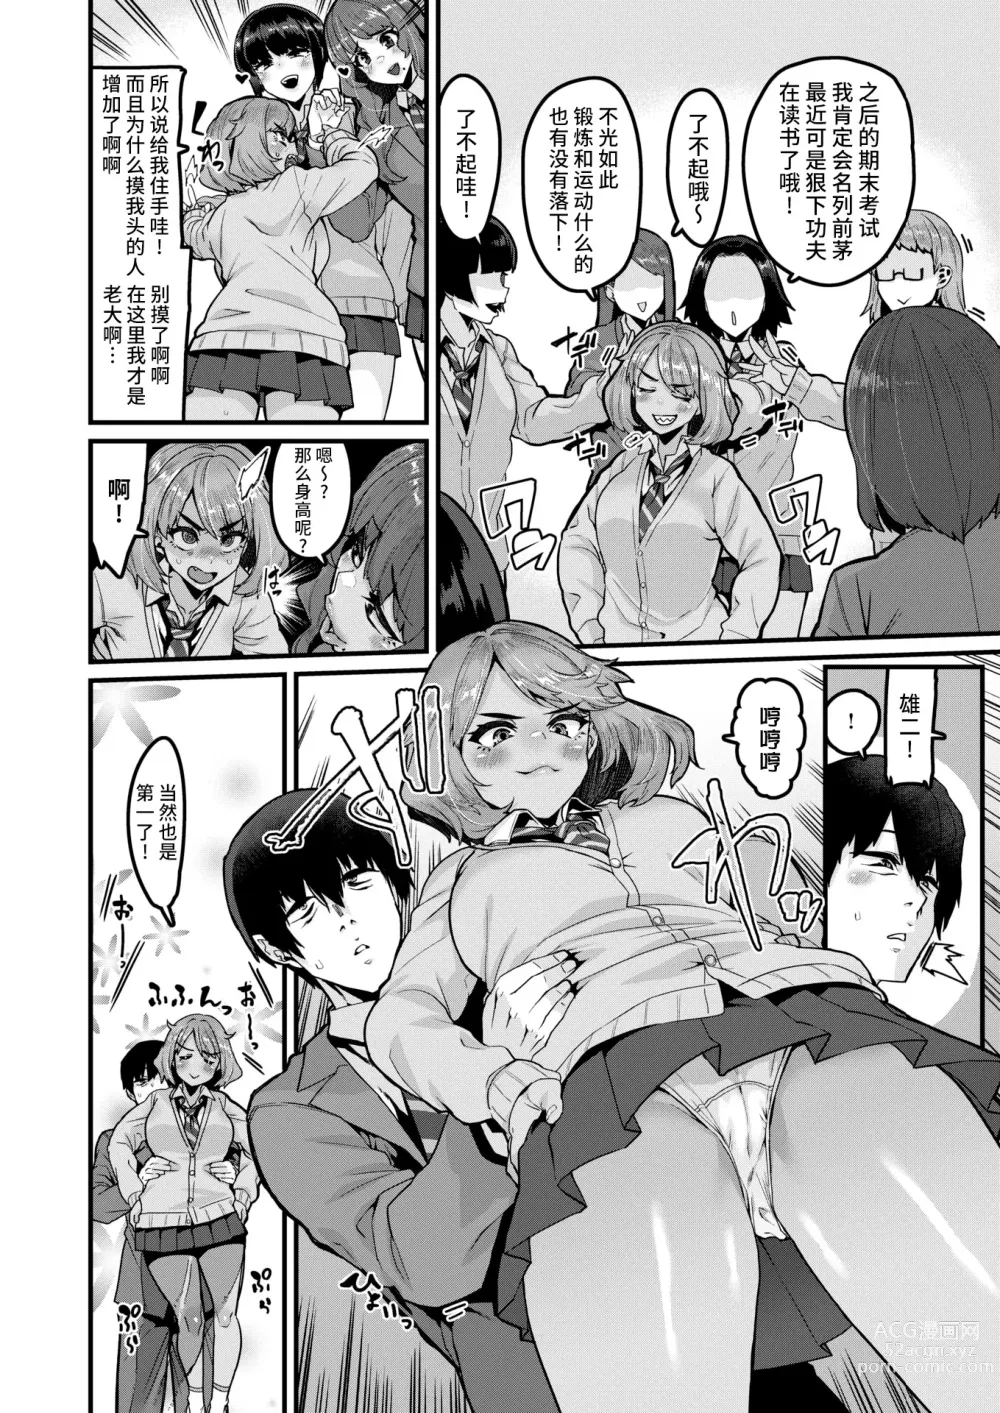 Page 3 of manga Tarinai Mono wa Oginatte!